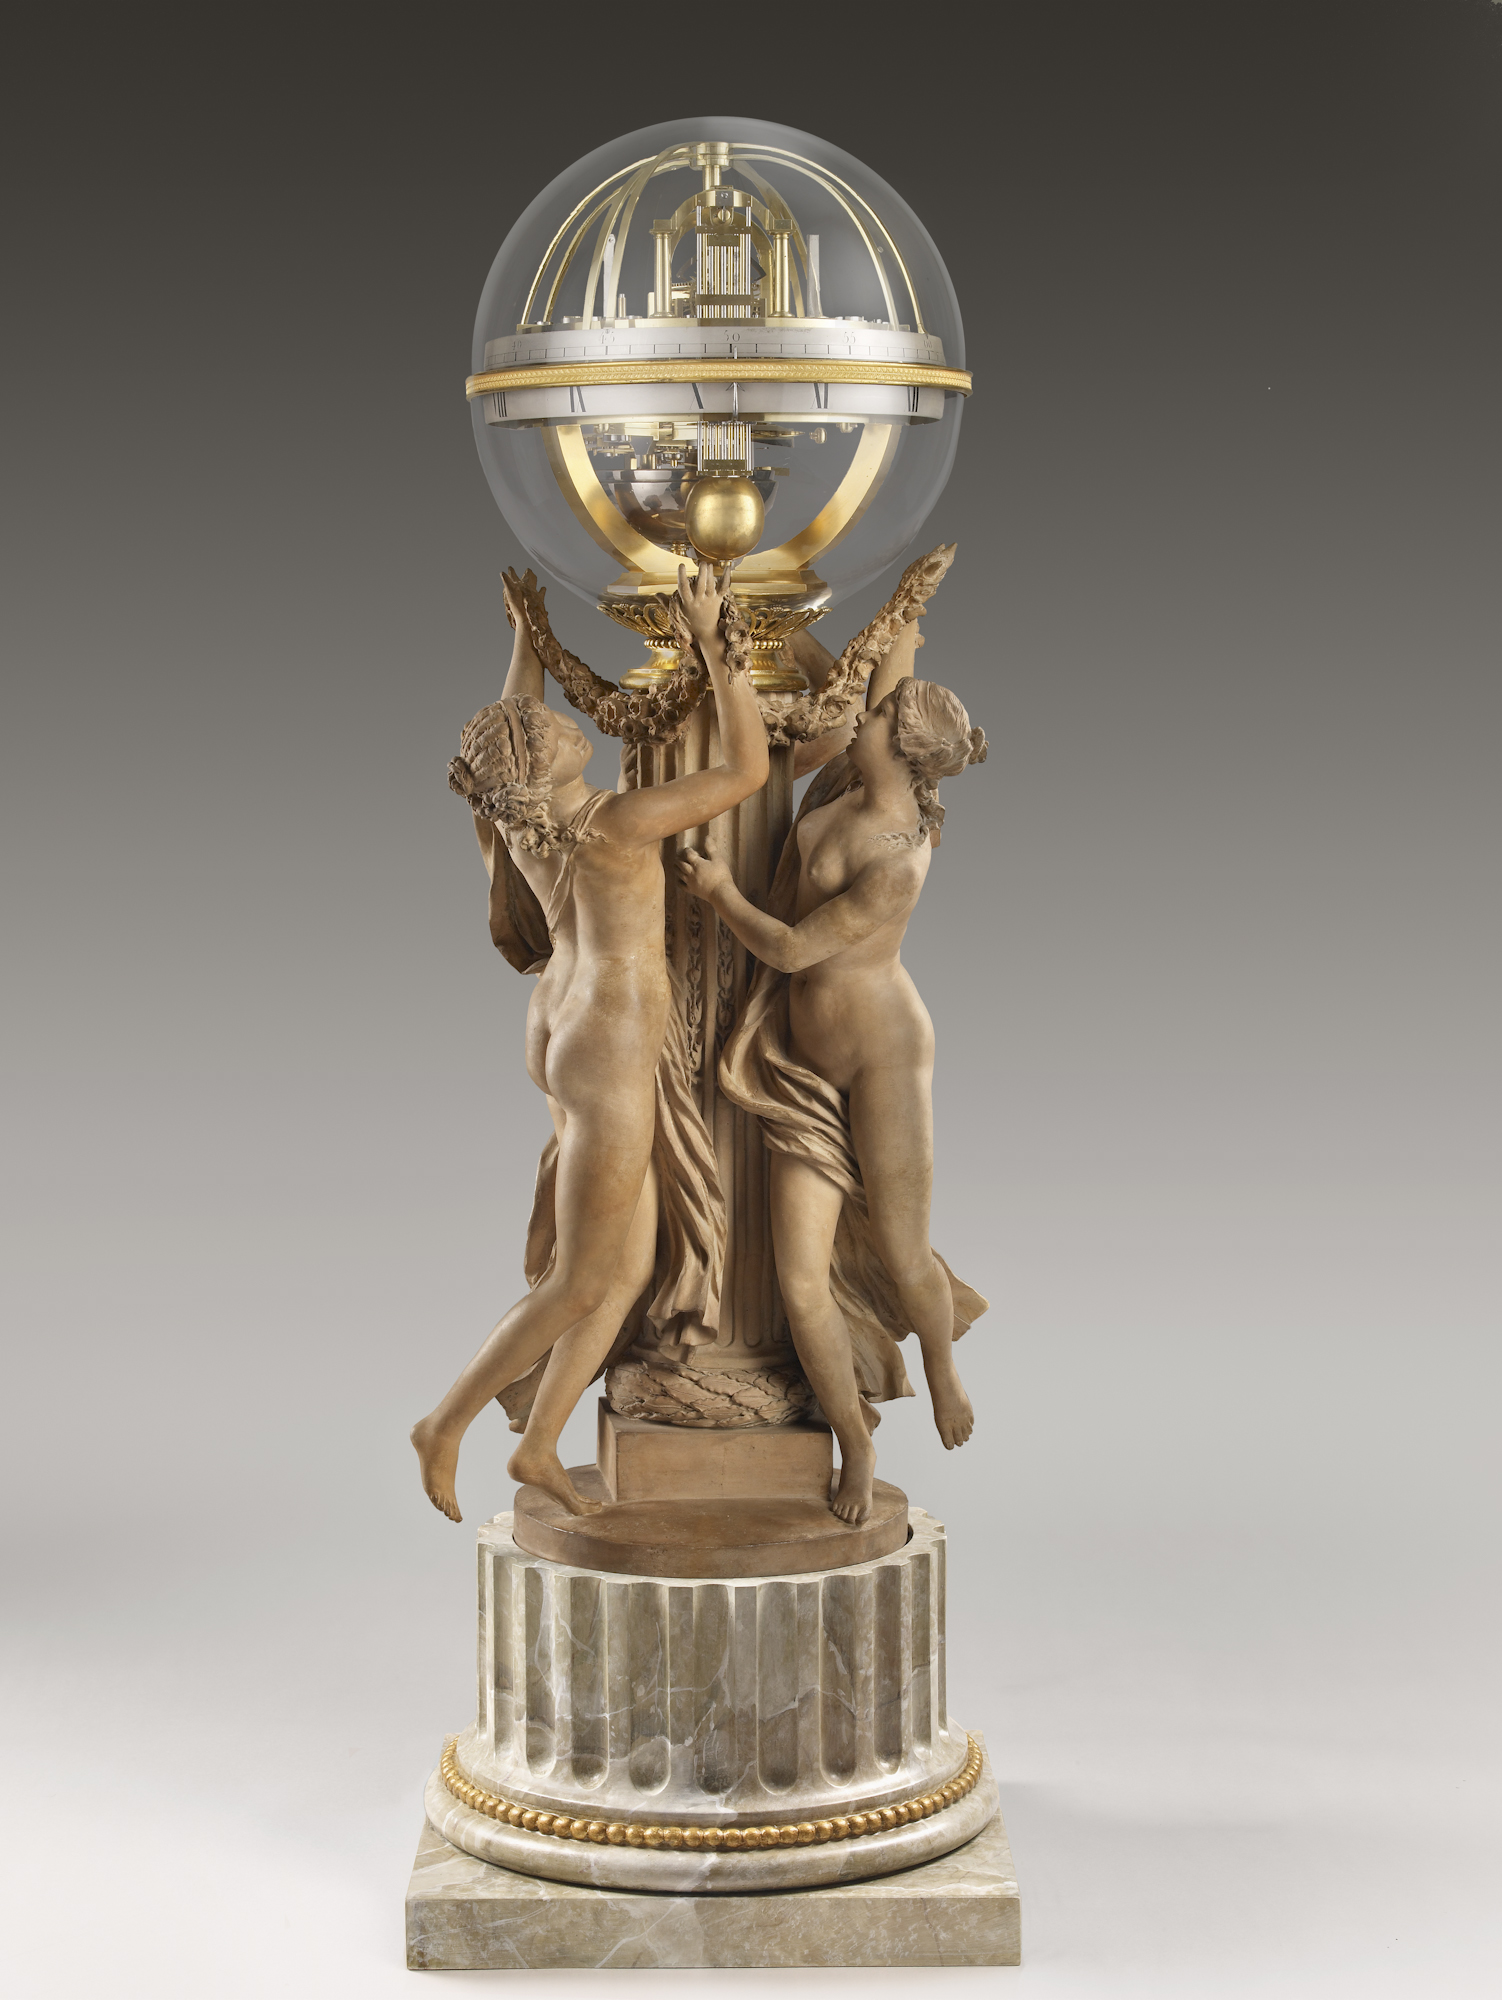 Tanec času: Tři nymfy podpírající hodiny by Claude Michel, called Clodion - 1788 - 103.5 cm 